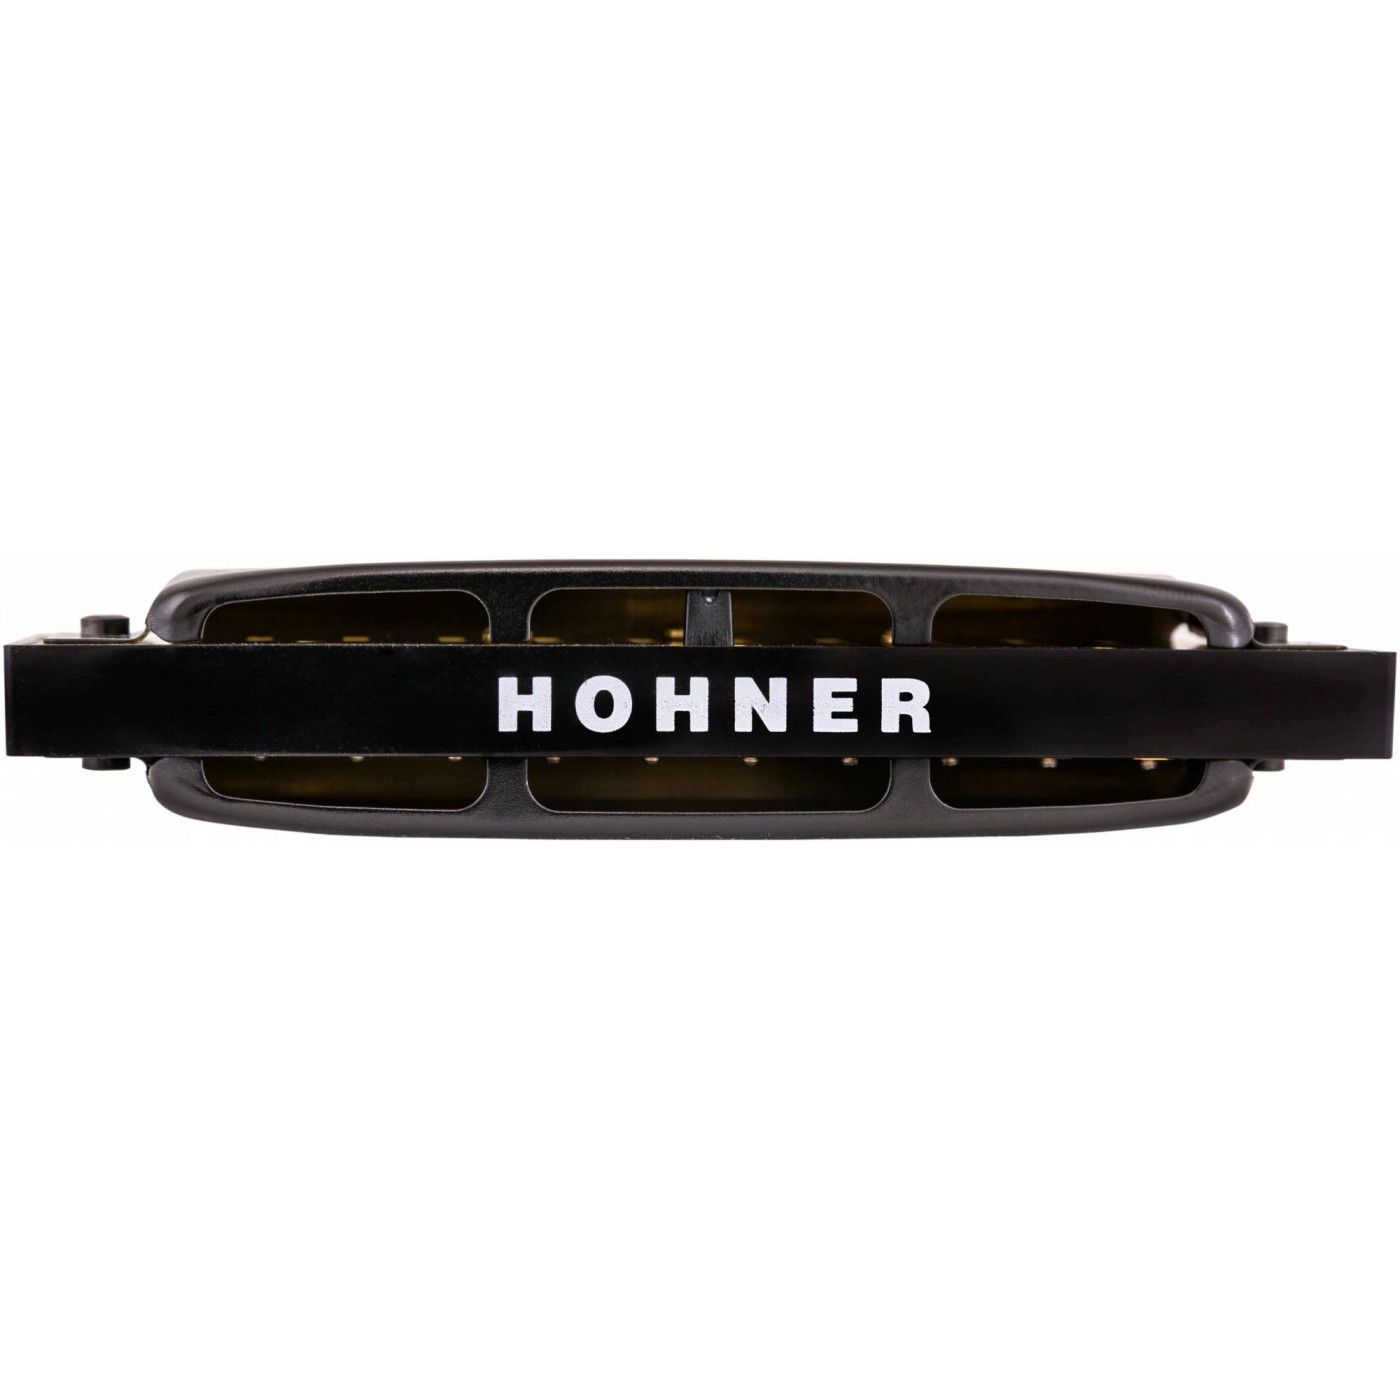 Детальная картинка товара Hohner Pro Harp 562/20 MS B в магазине Музыкальная Тема